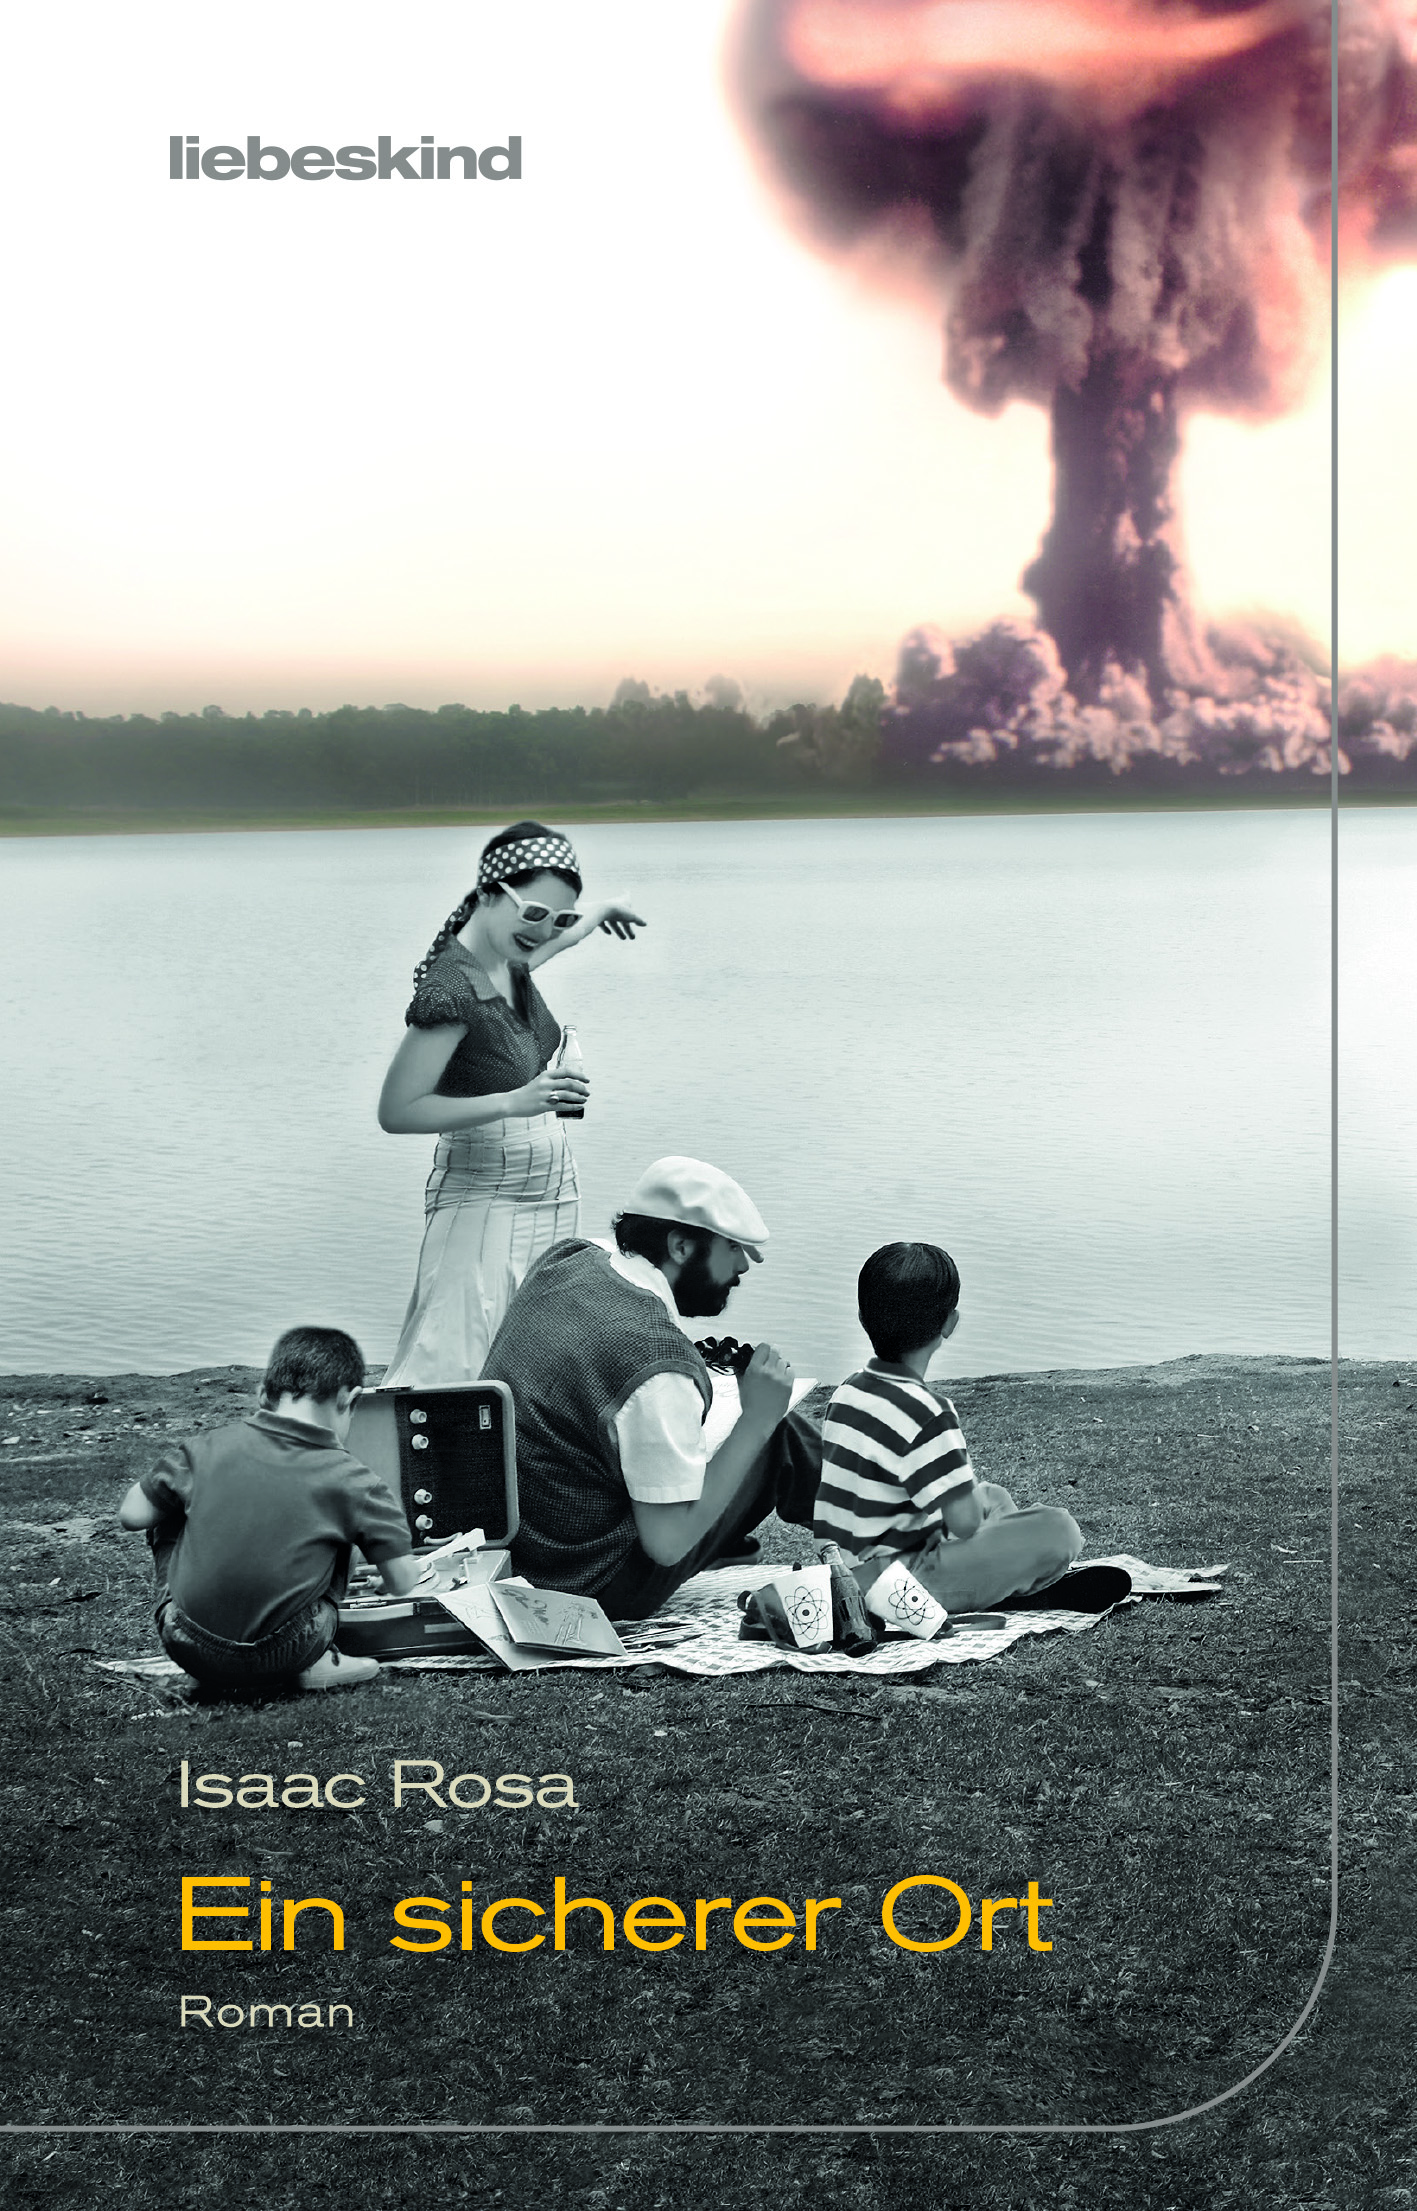 Charla y lectura de «Lugar seguro» con el autor Isaac Rosa 